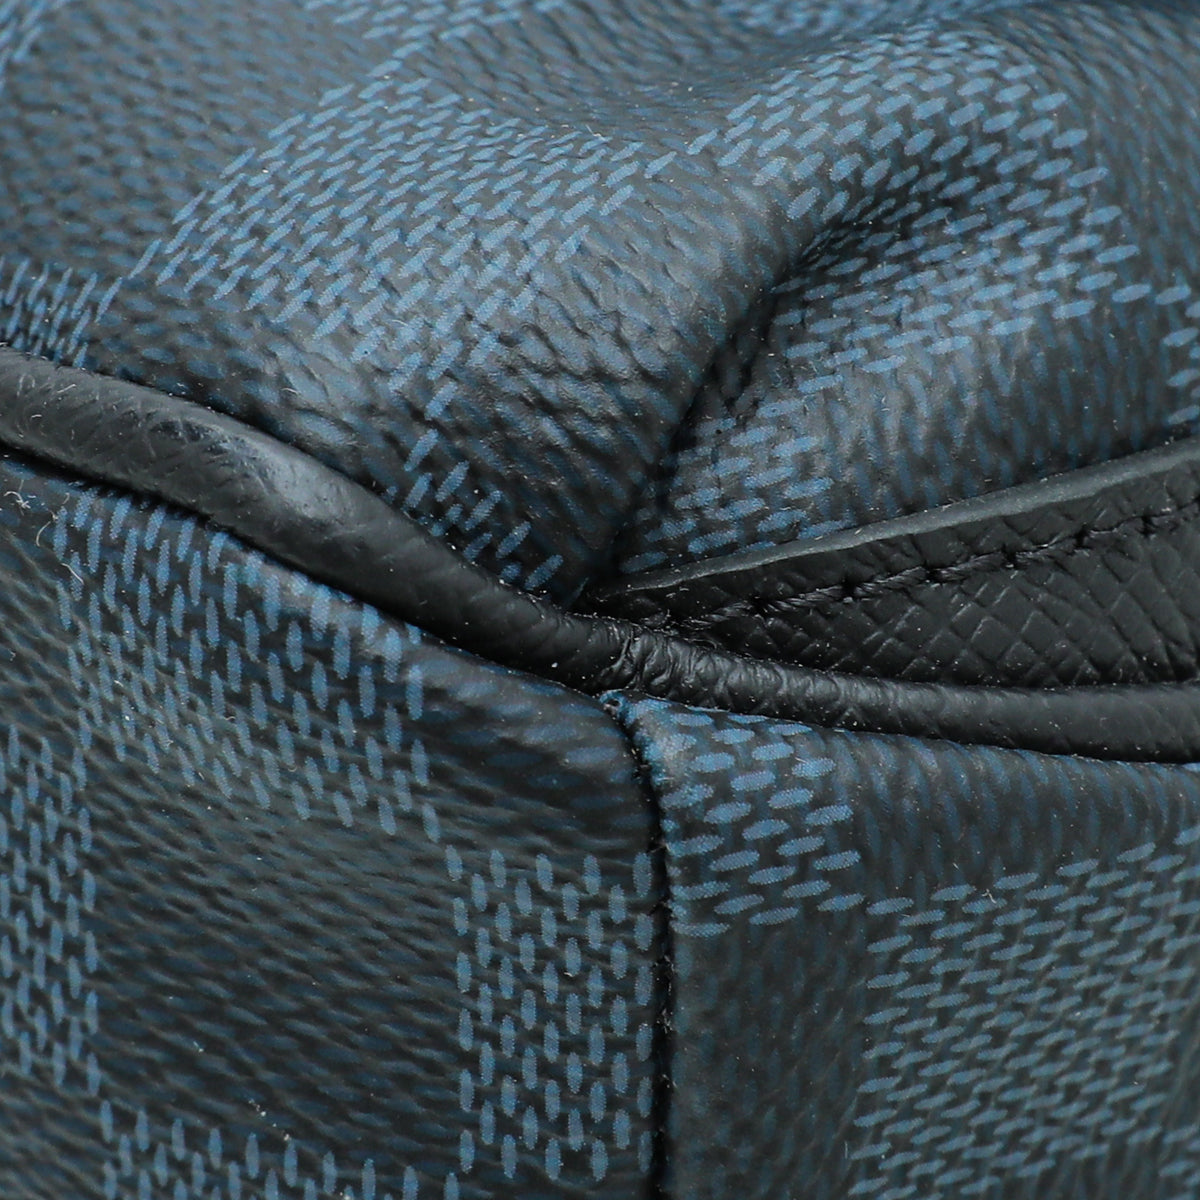 Louis Vuitton Damier Cobalt Matchpoint Messenger - Blue Messenger Bags, Bags  - LOU751316